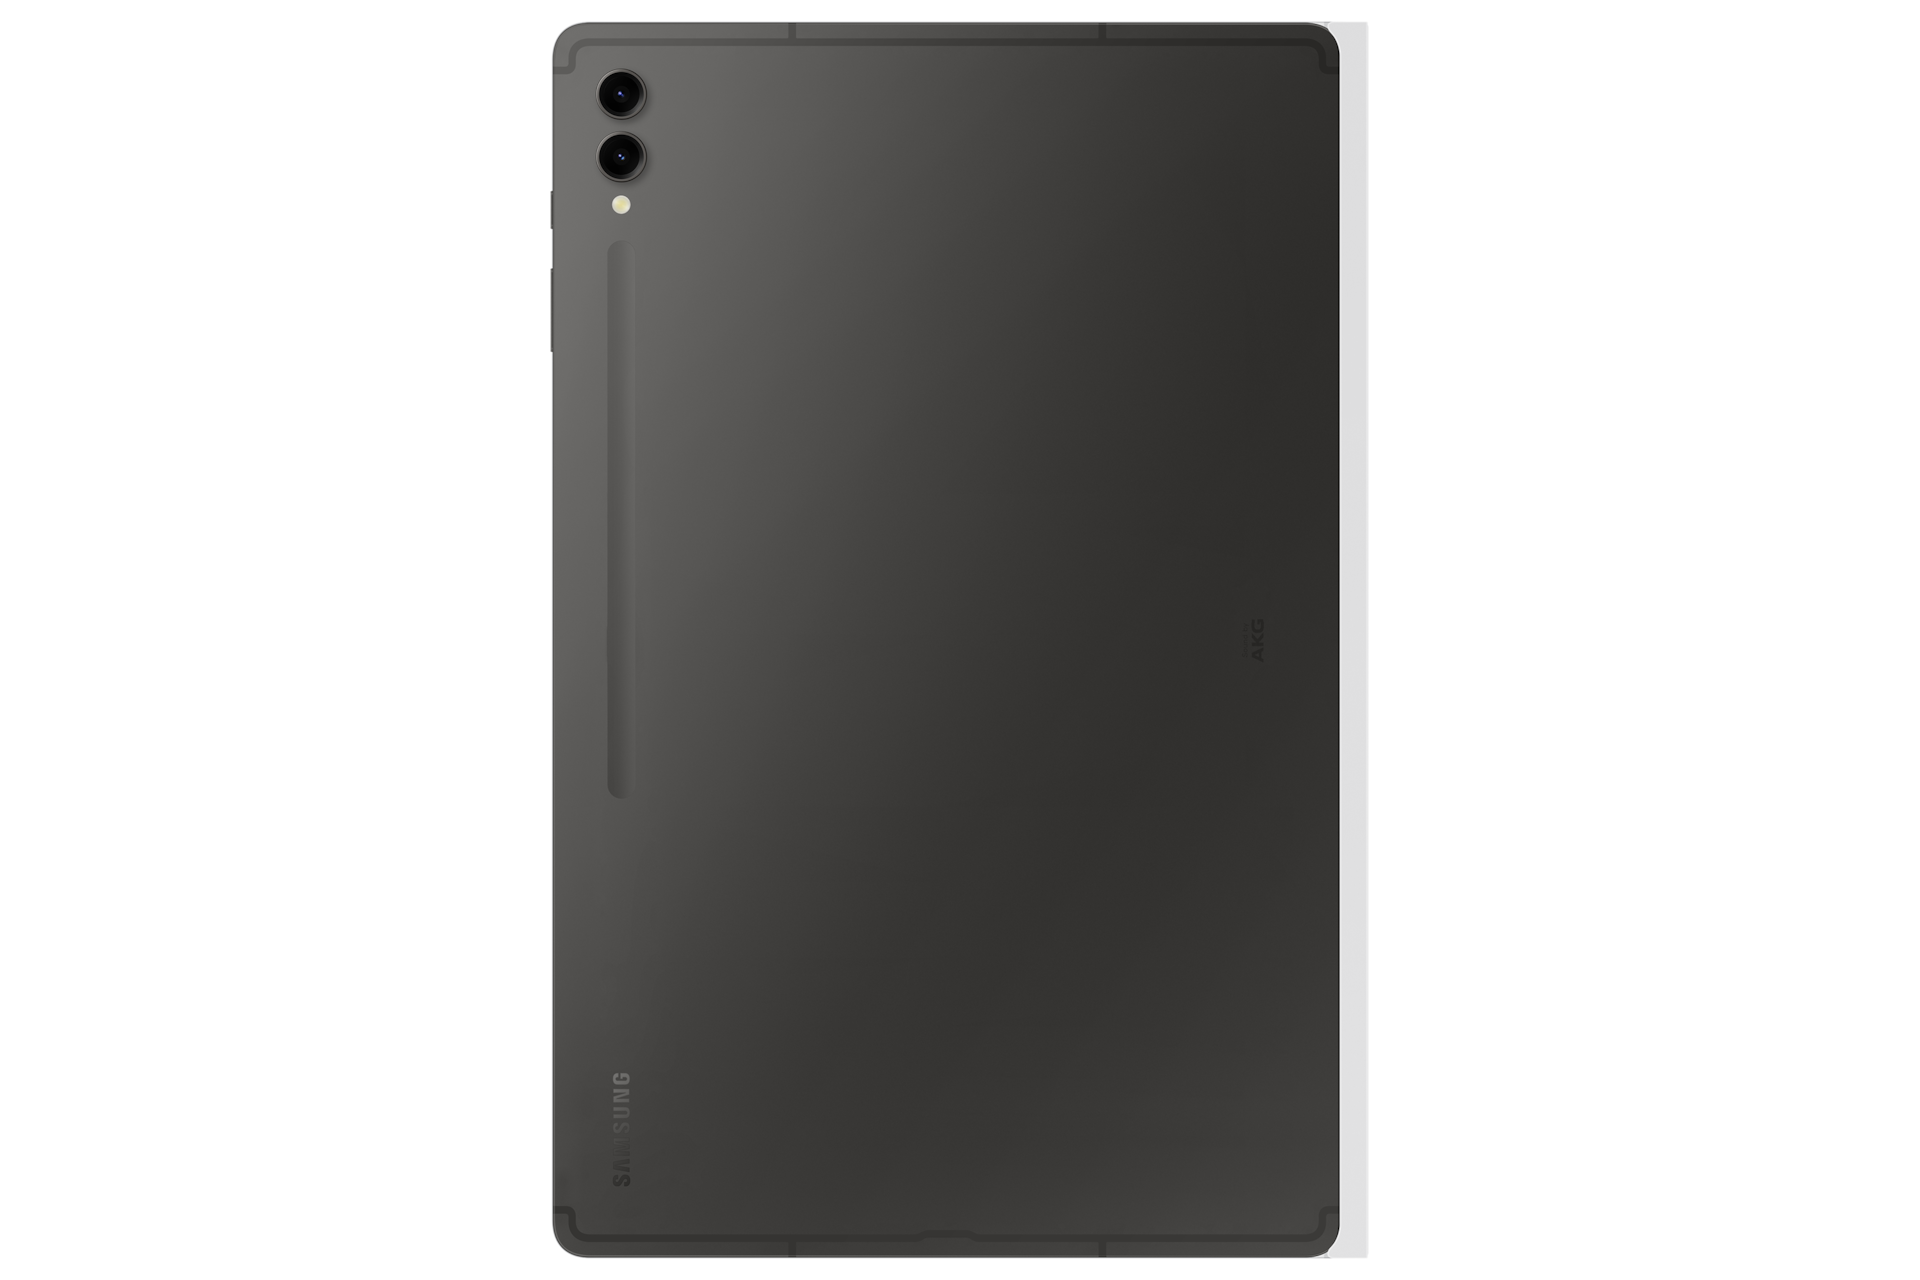 갤럭시 탭 S9 Ultra 노트페이퍼 스크린 (화이트) 제품에 갤럭시 탭을 장착한 제품 후면 이미지